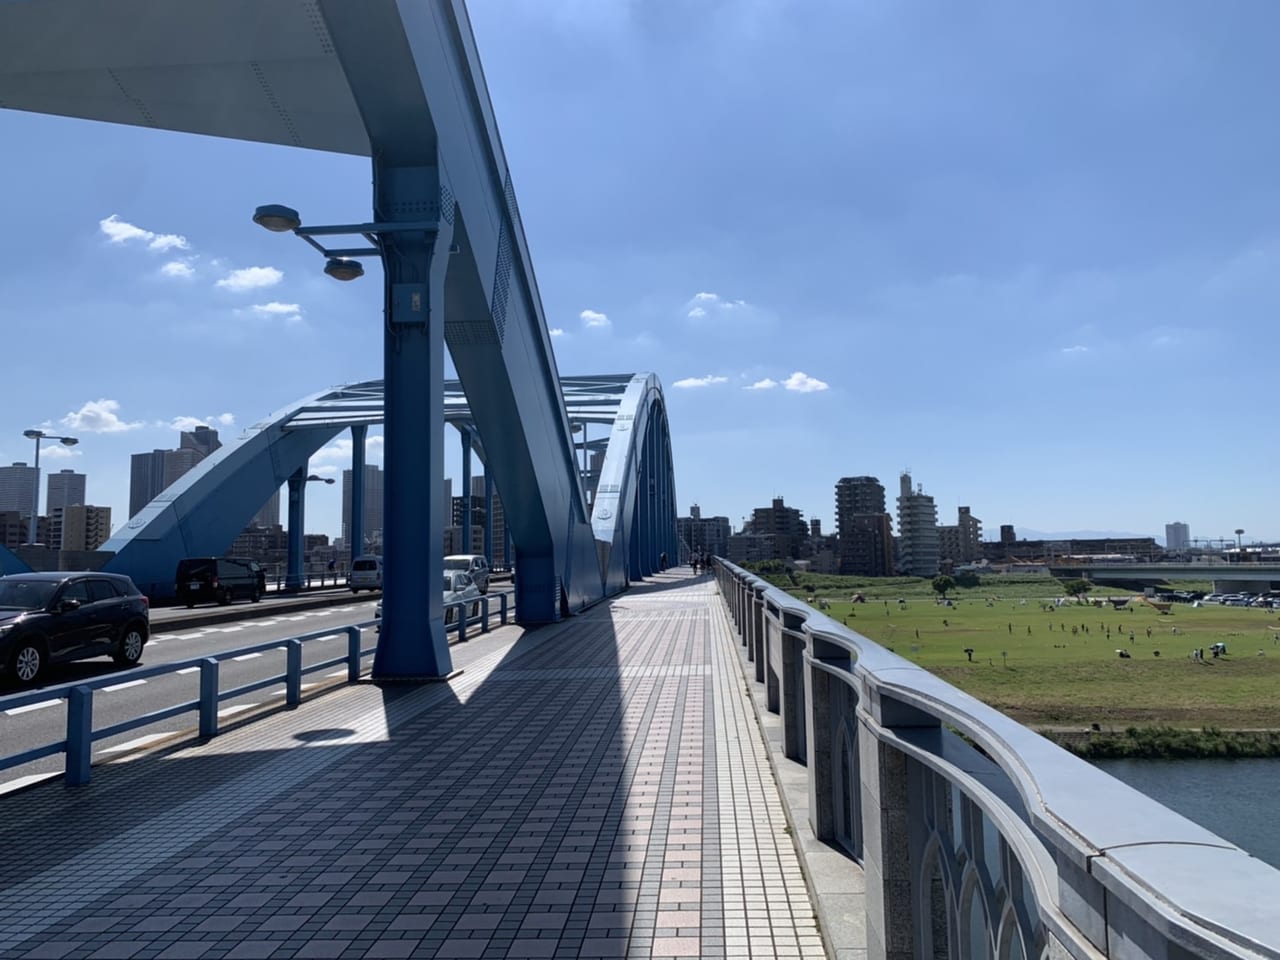 多摩川丸子橋